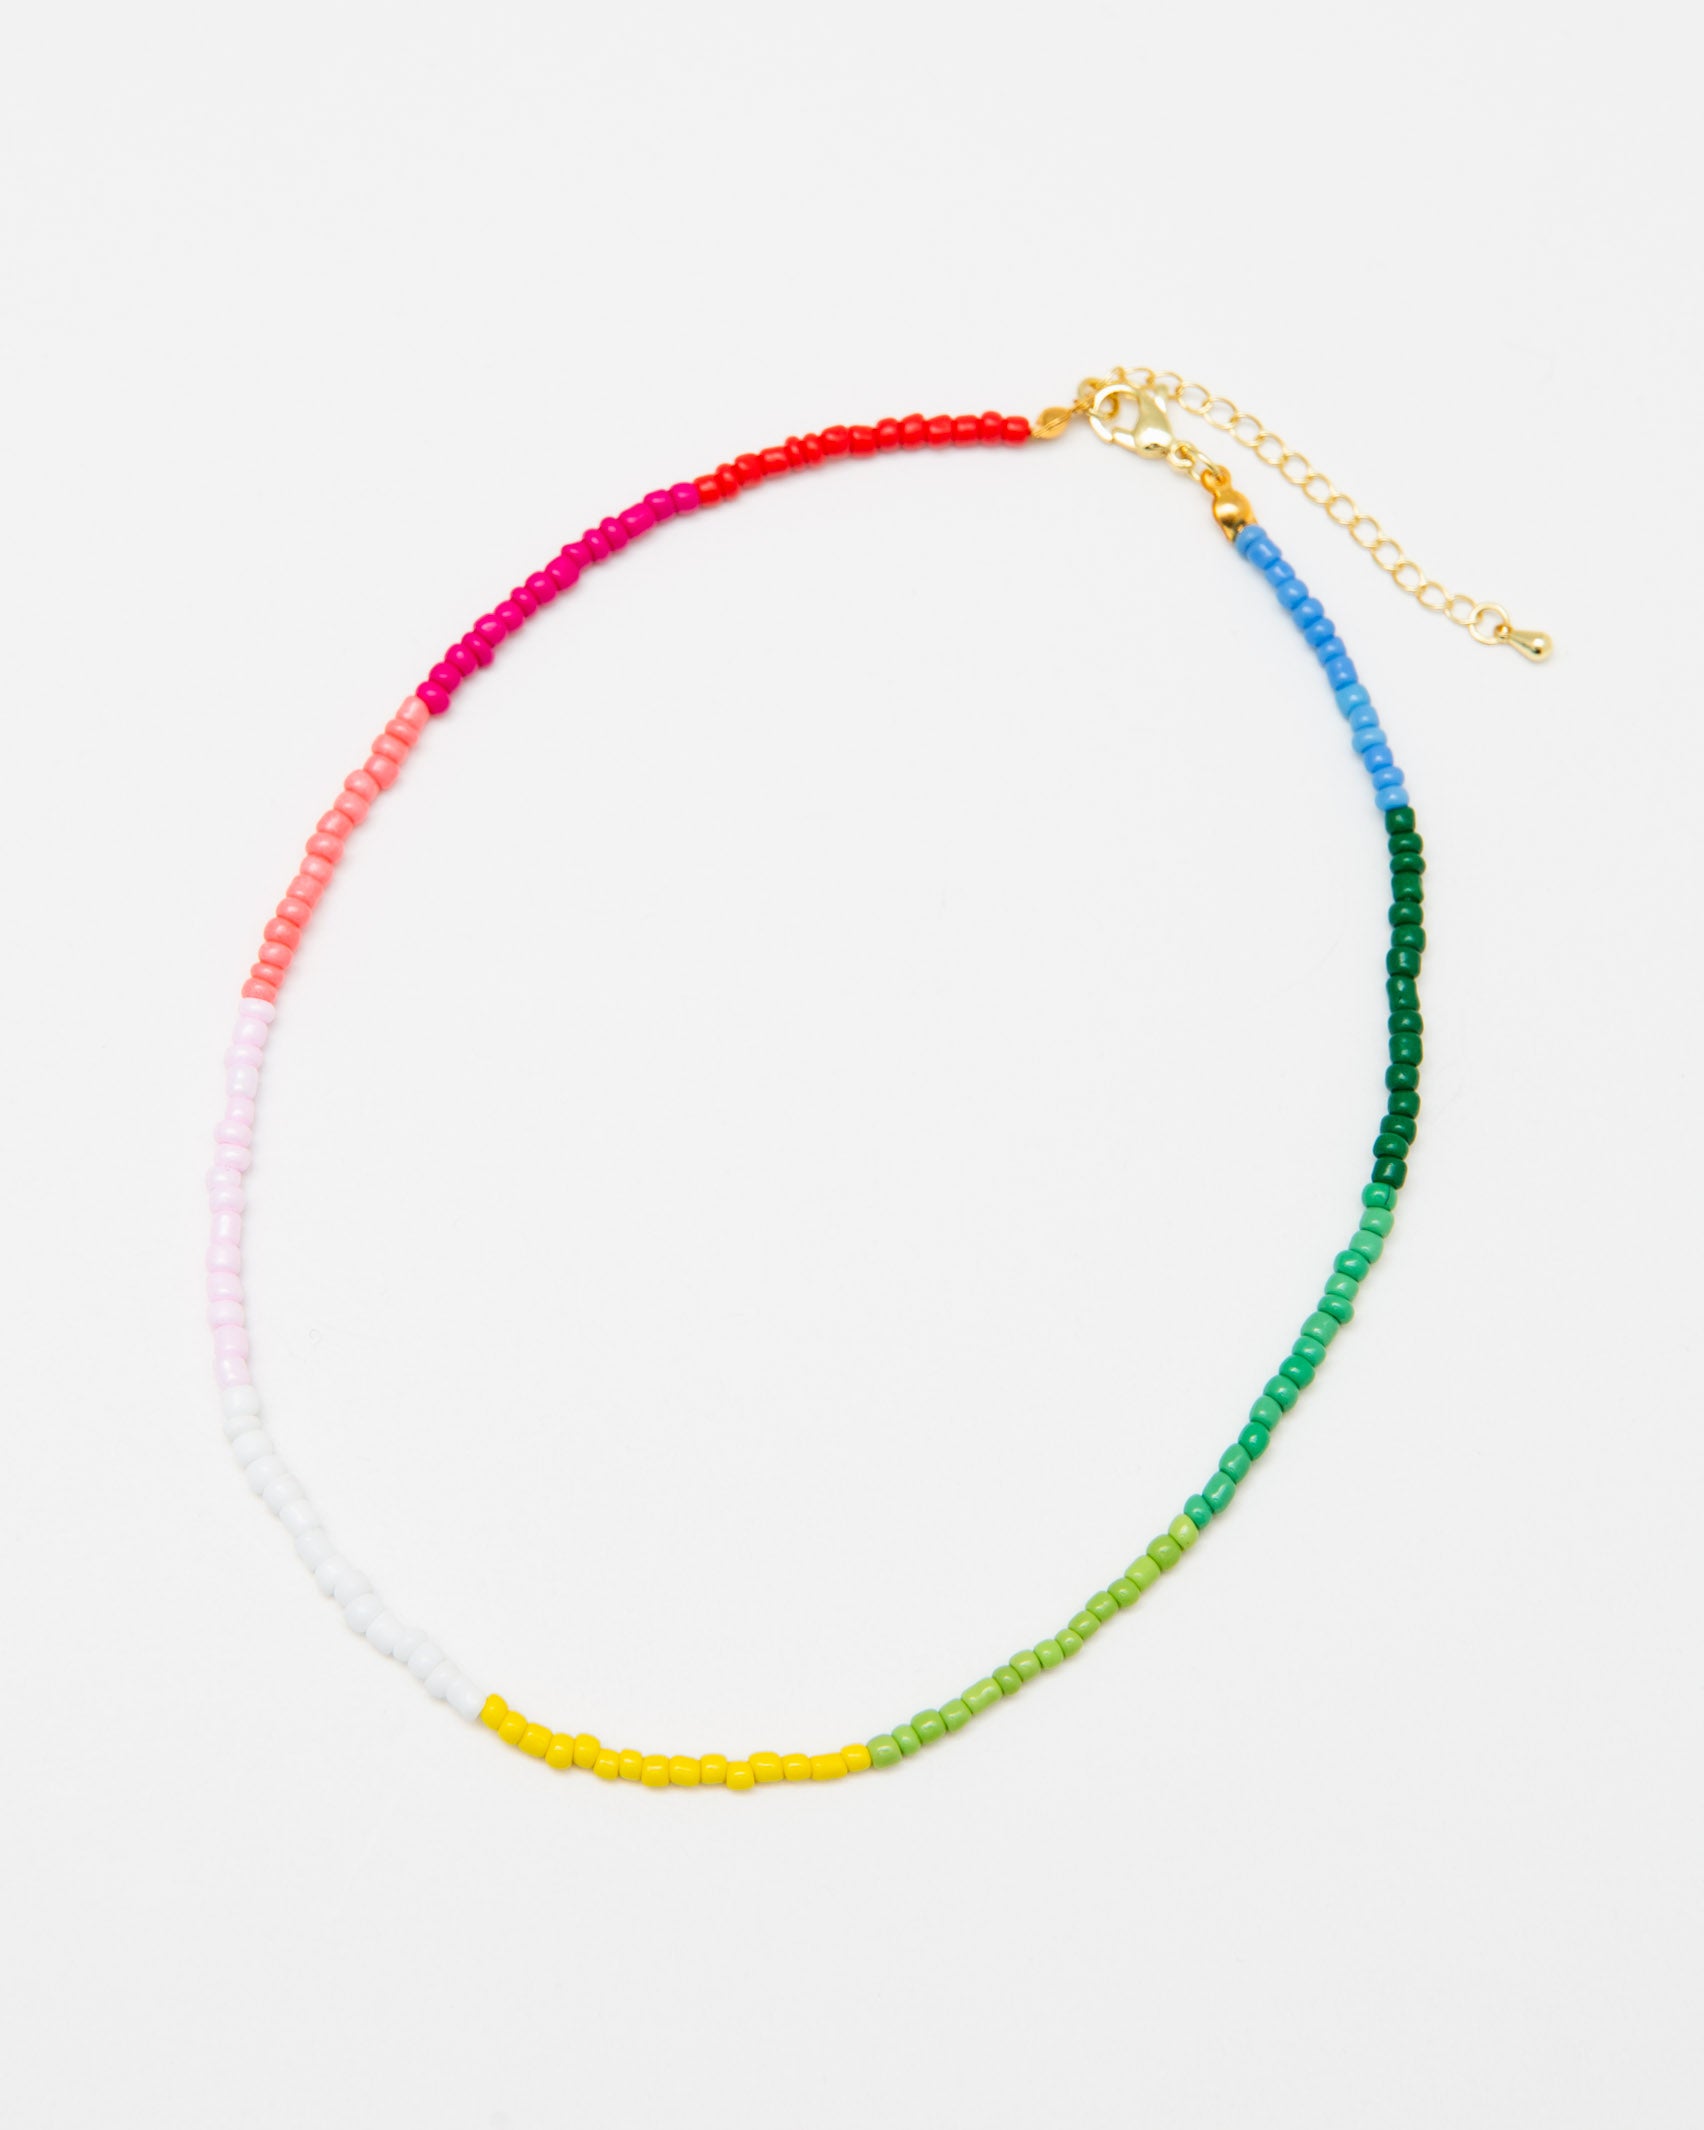 Perlenkette in Regenbogenfarben - Broke + Schön#farbe_rainbow